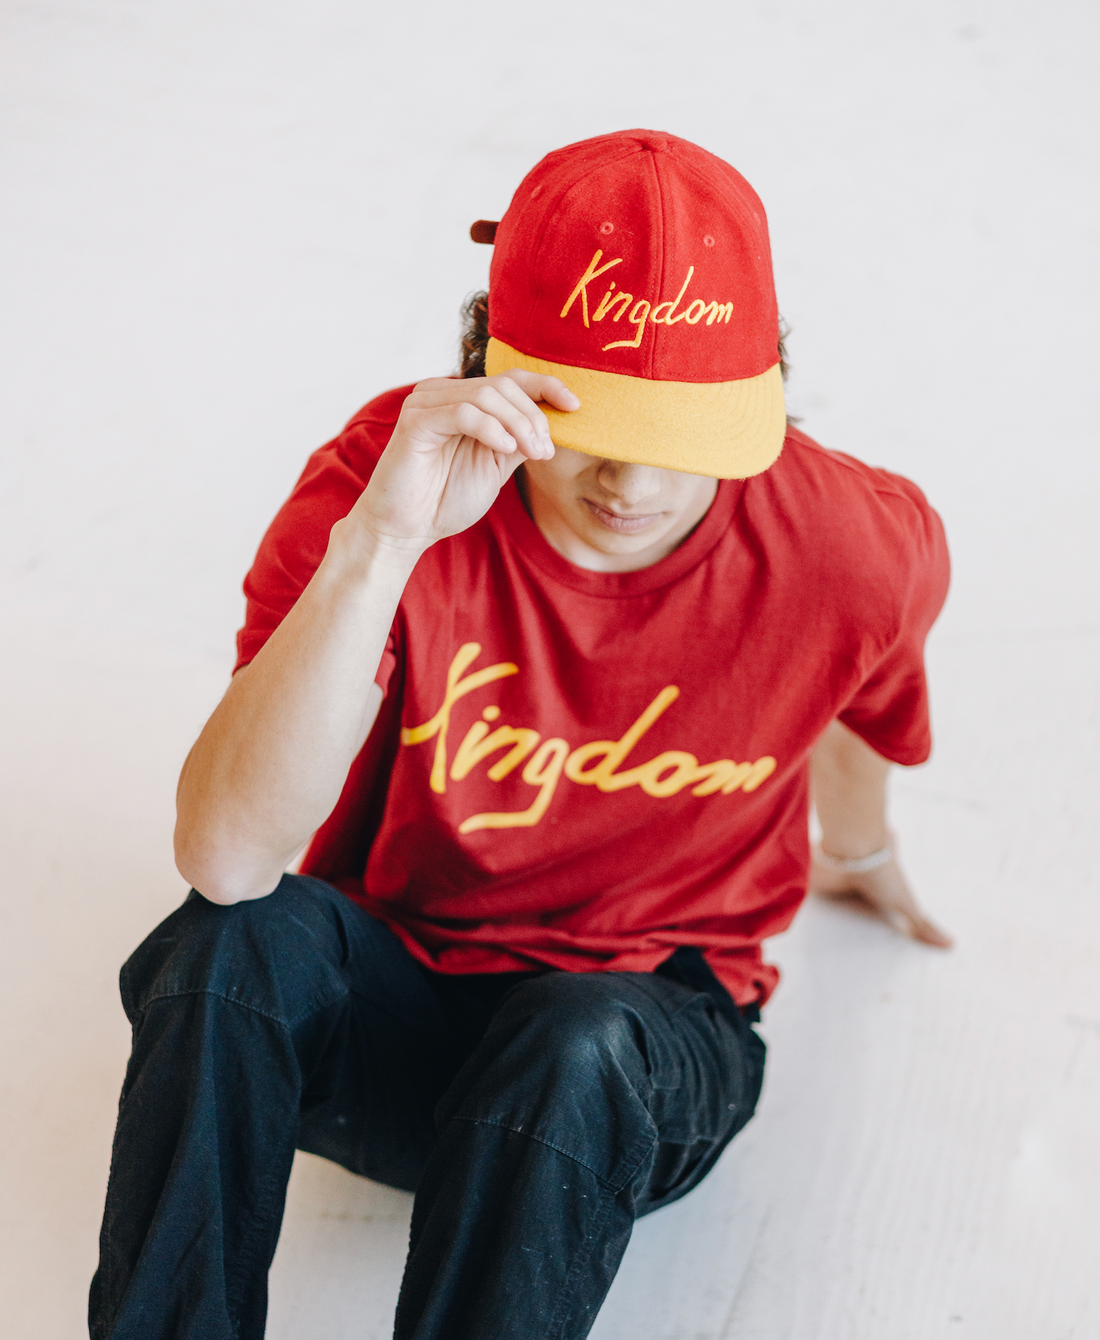 Red/Gold Vintage Flatbill Hat - Kingdom